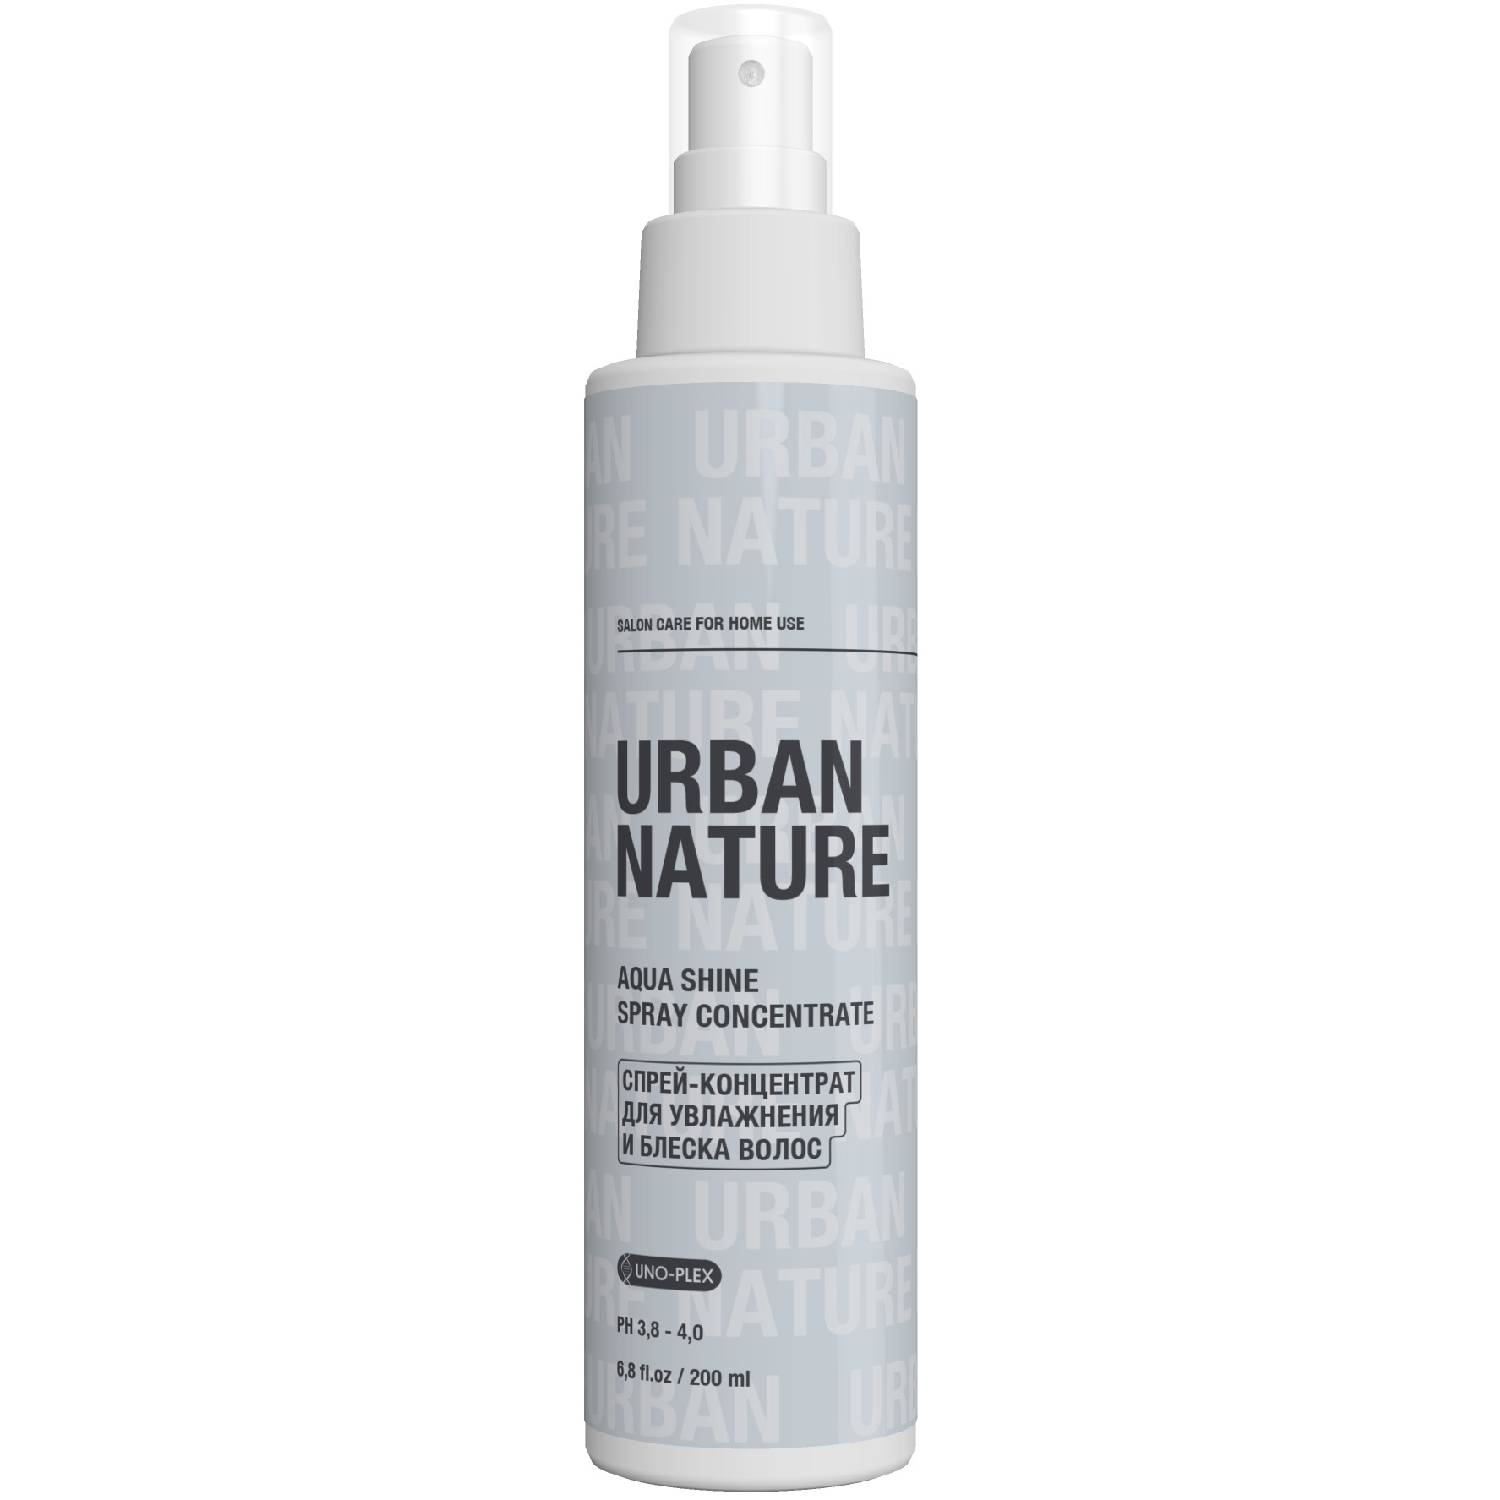 Urban Nature Спрей-концентрат для увлажнения и блеска волос, 200 мл (Urban Nature, Aqua Shine)